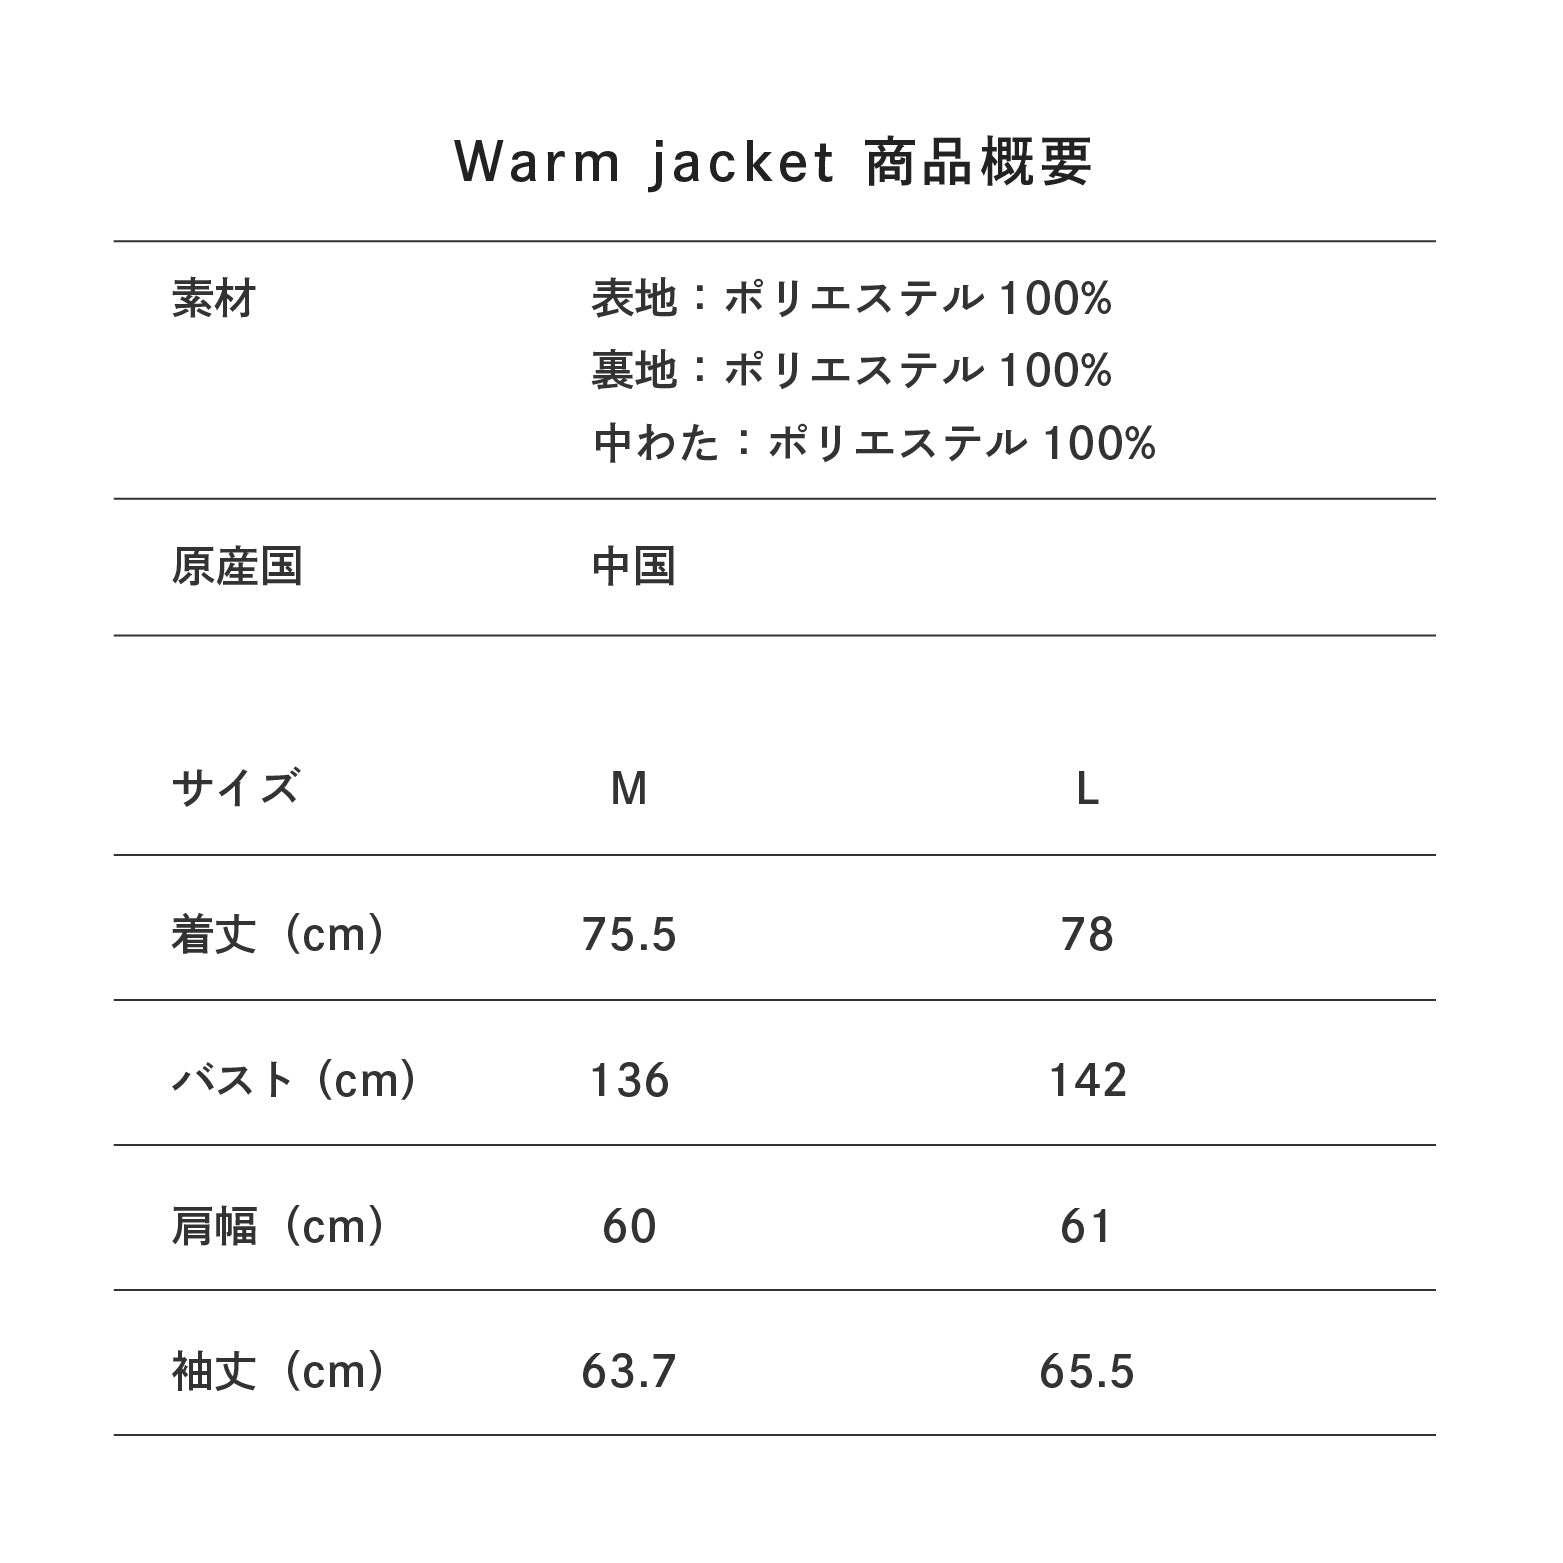 Warm jacket